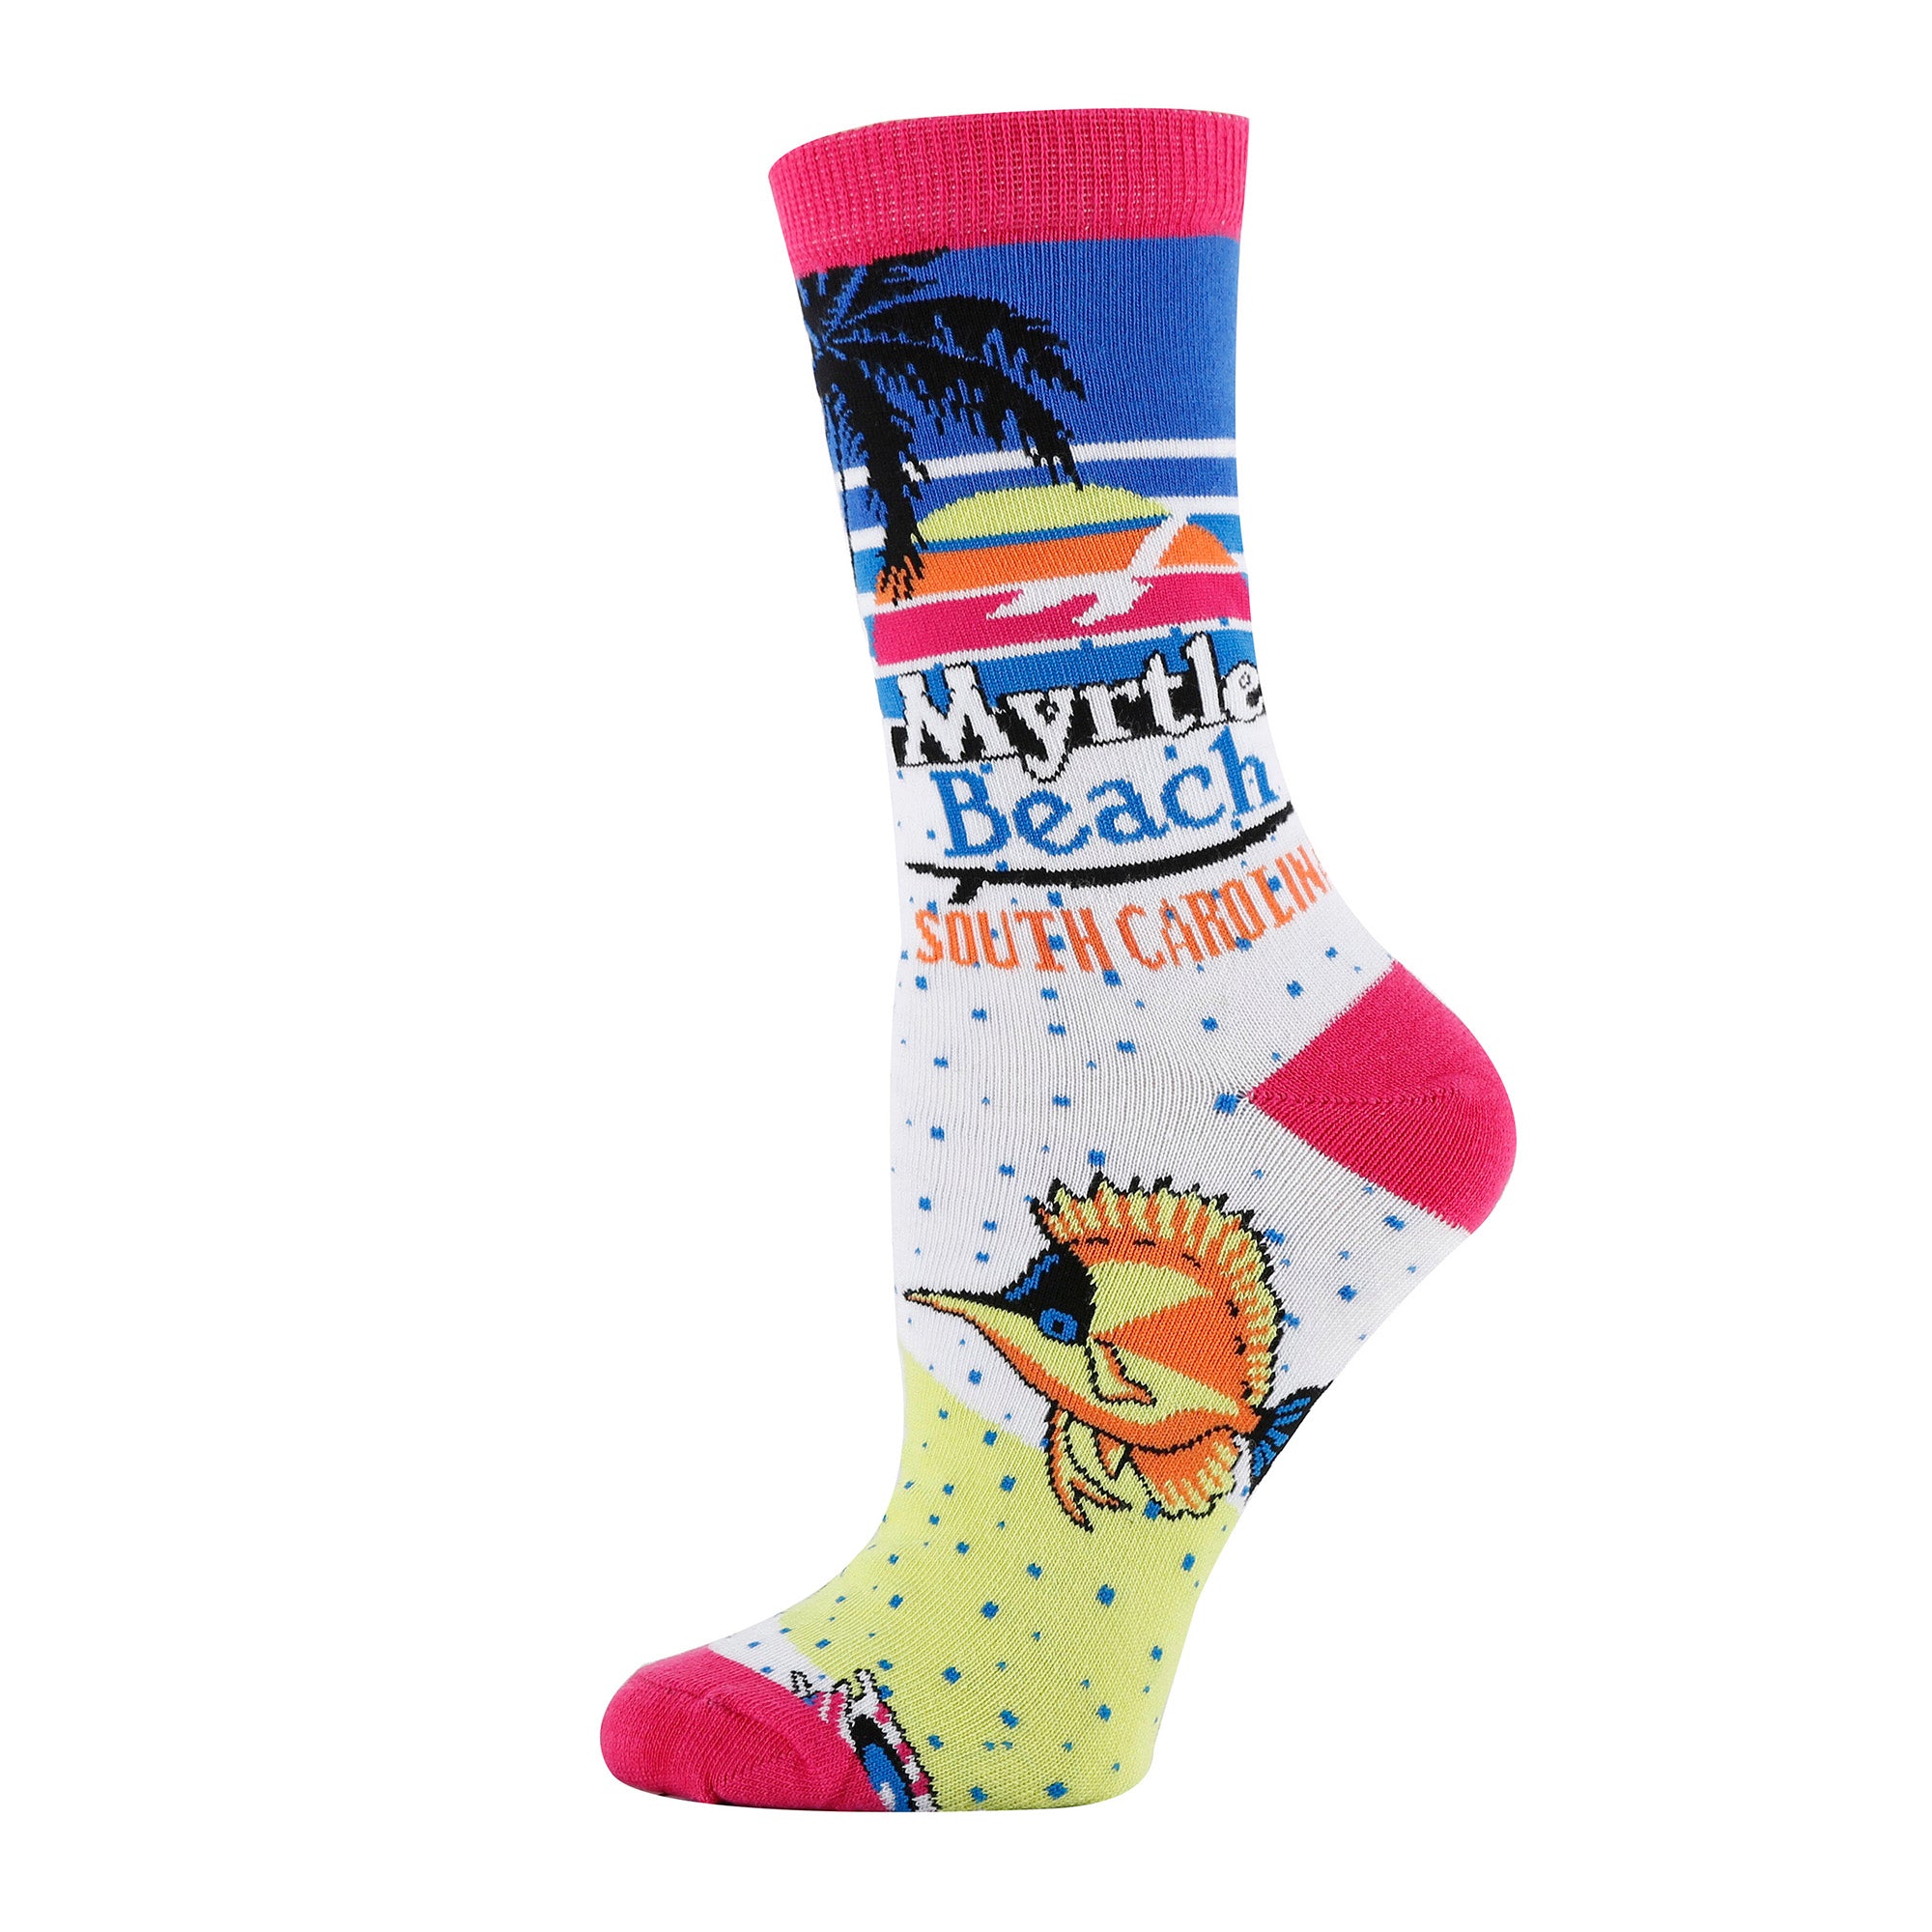 Myrtle Beach Socks